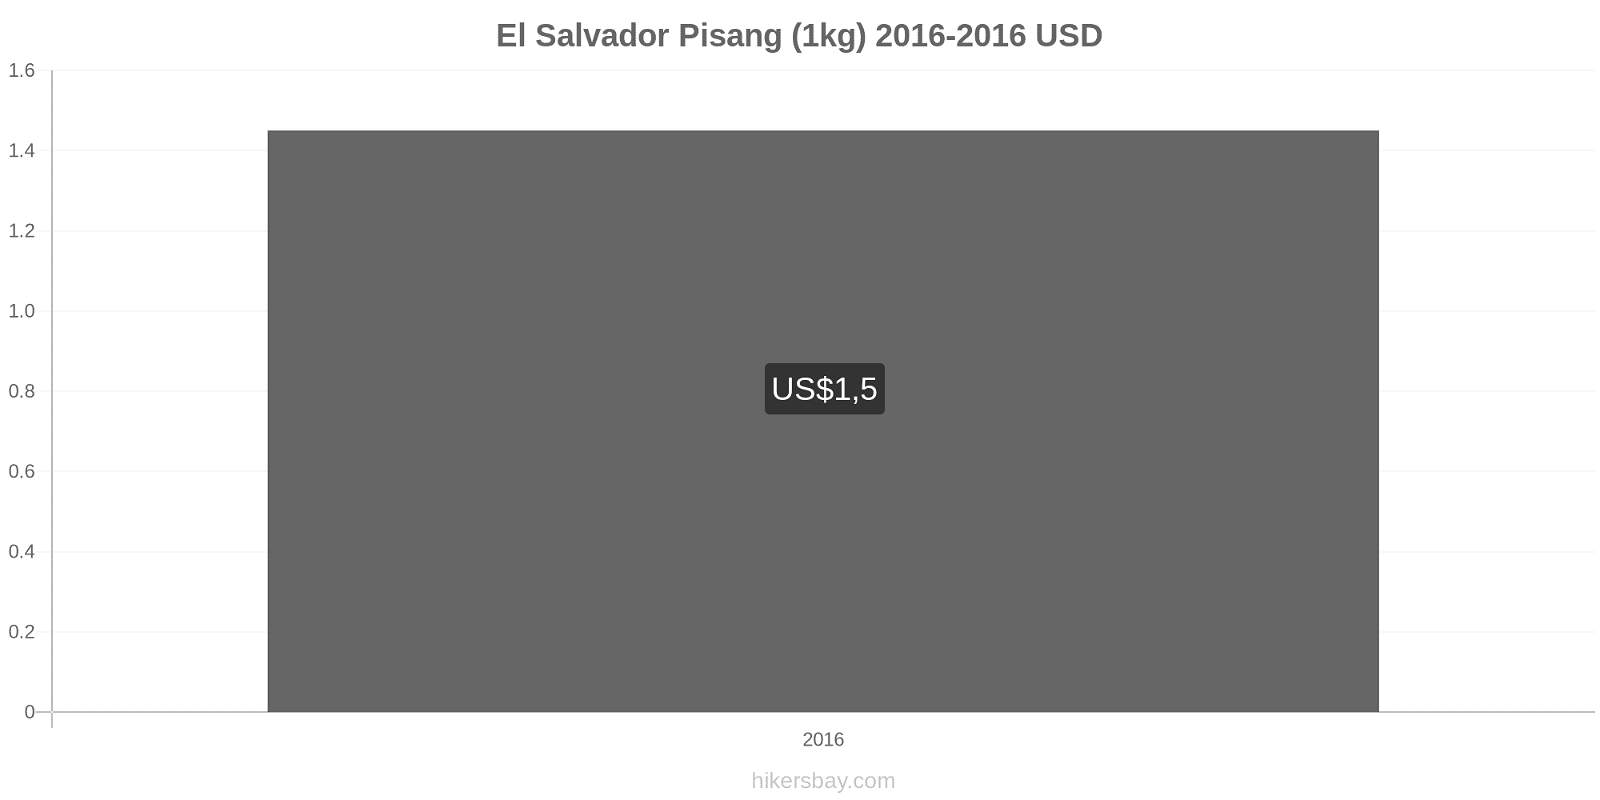 El Salvador perubahan harga Pisang (1kg) hikersbay.com